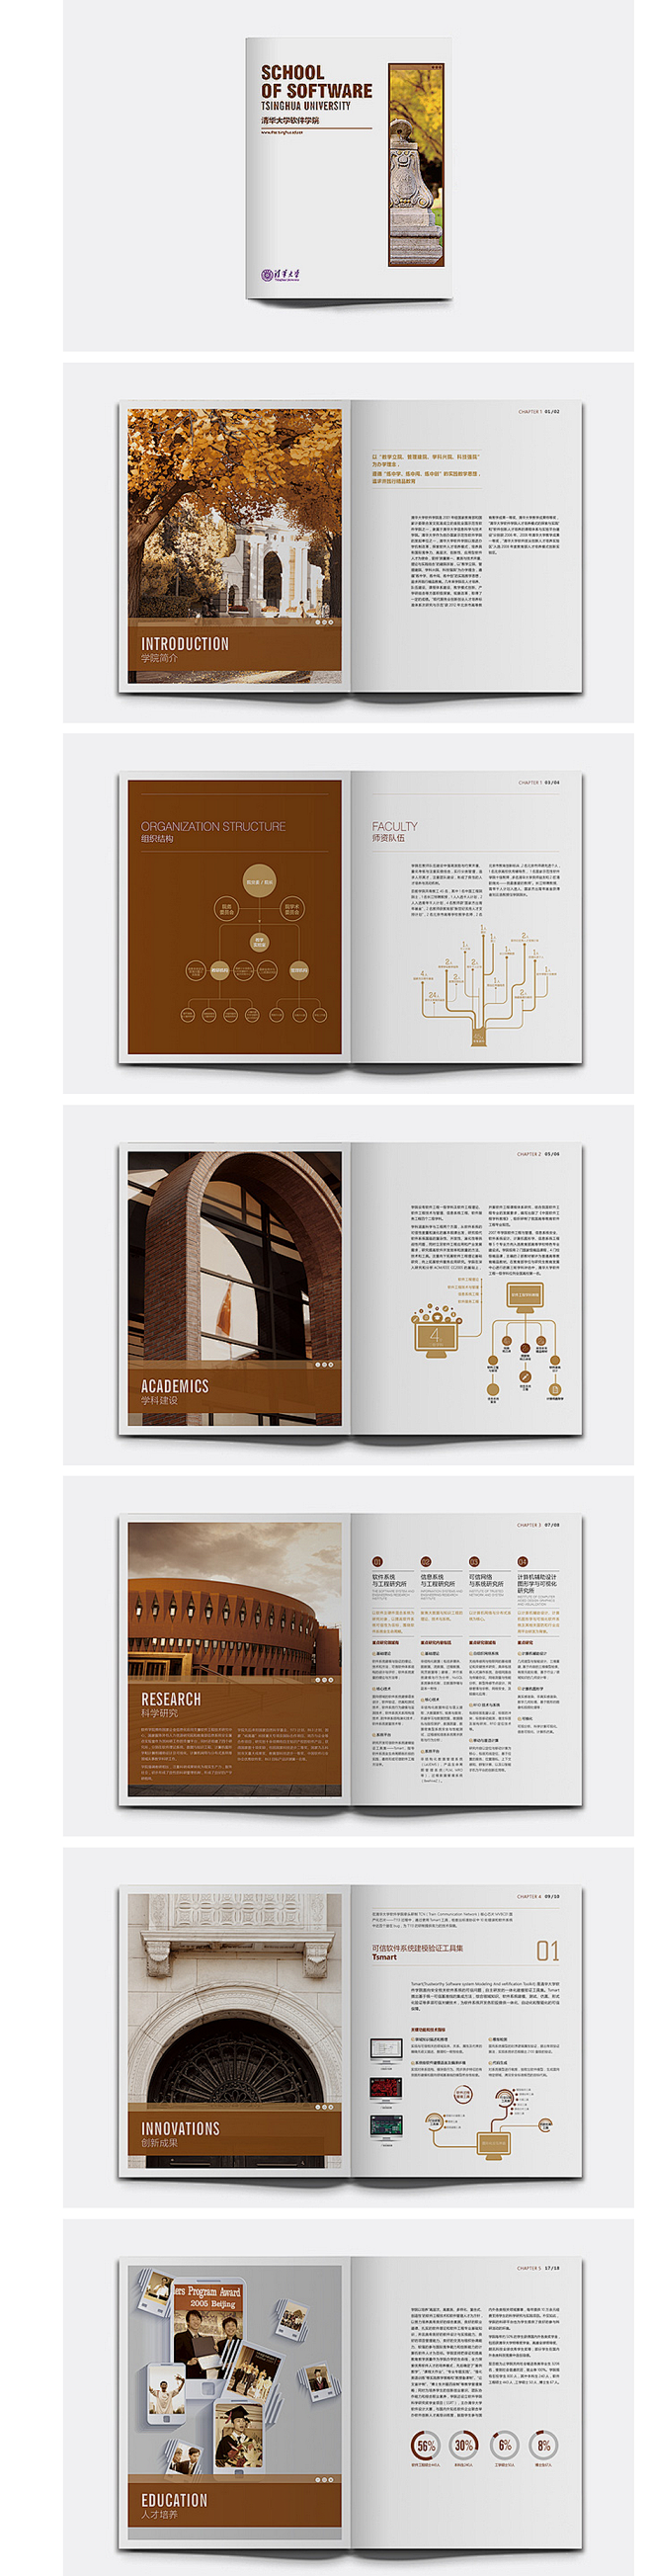 清华大学画册设计-潮风设计出品